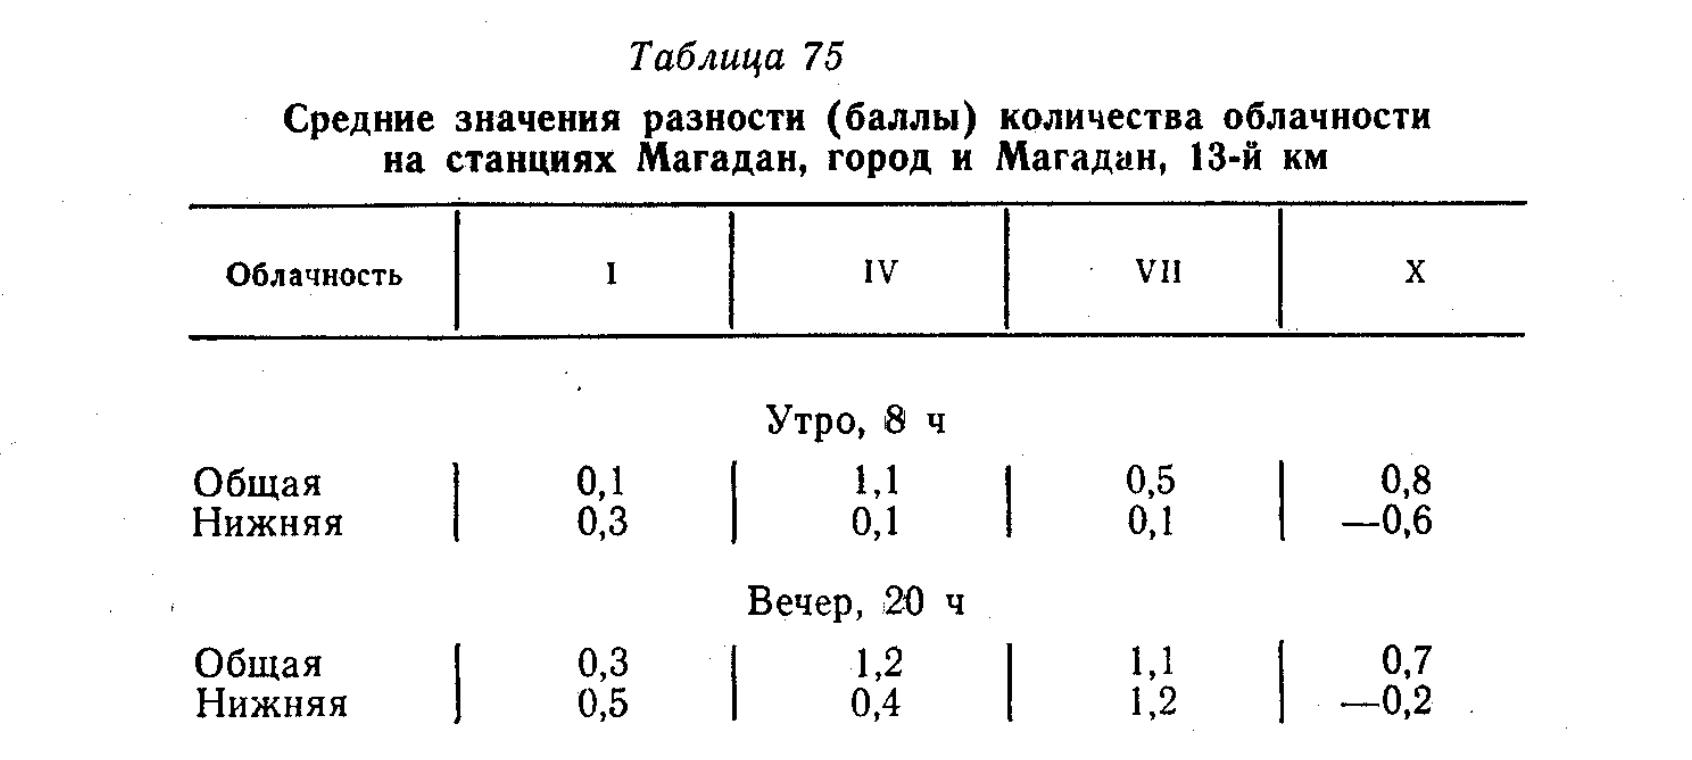 Таблица 75 Средние значения разности (баллы) количества облачности на станциях Магадан, город и Магадан, 13-й км